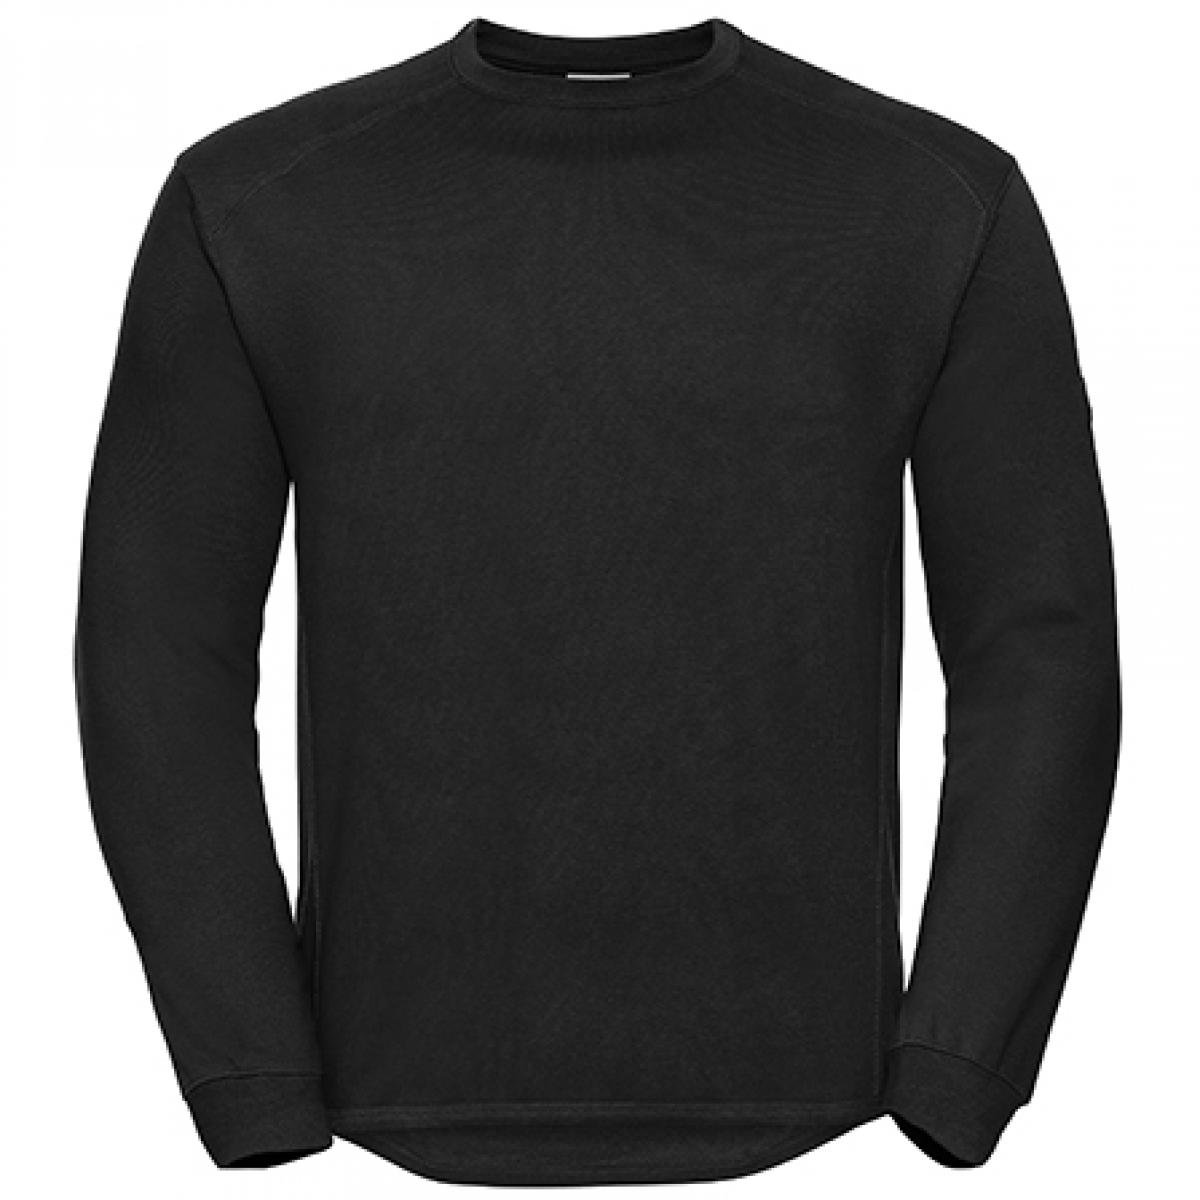 Hersteller: Russell Herstellernummer: R-013M-0 Artikelbezeichnung: Workwear-Sweatshirt / Pullover Farbe: Black